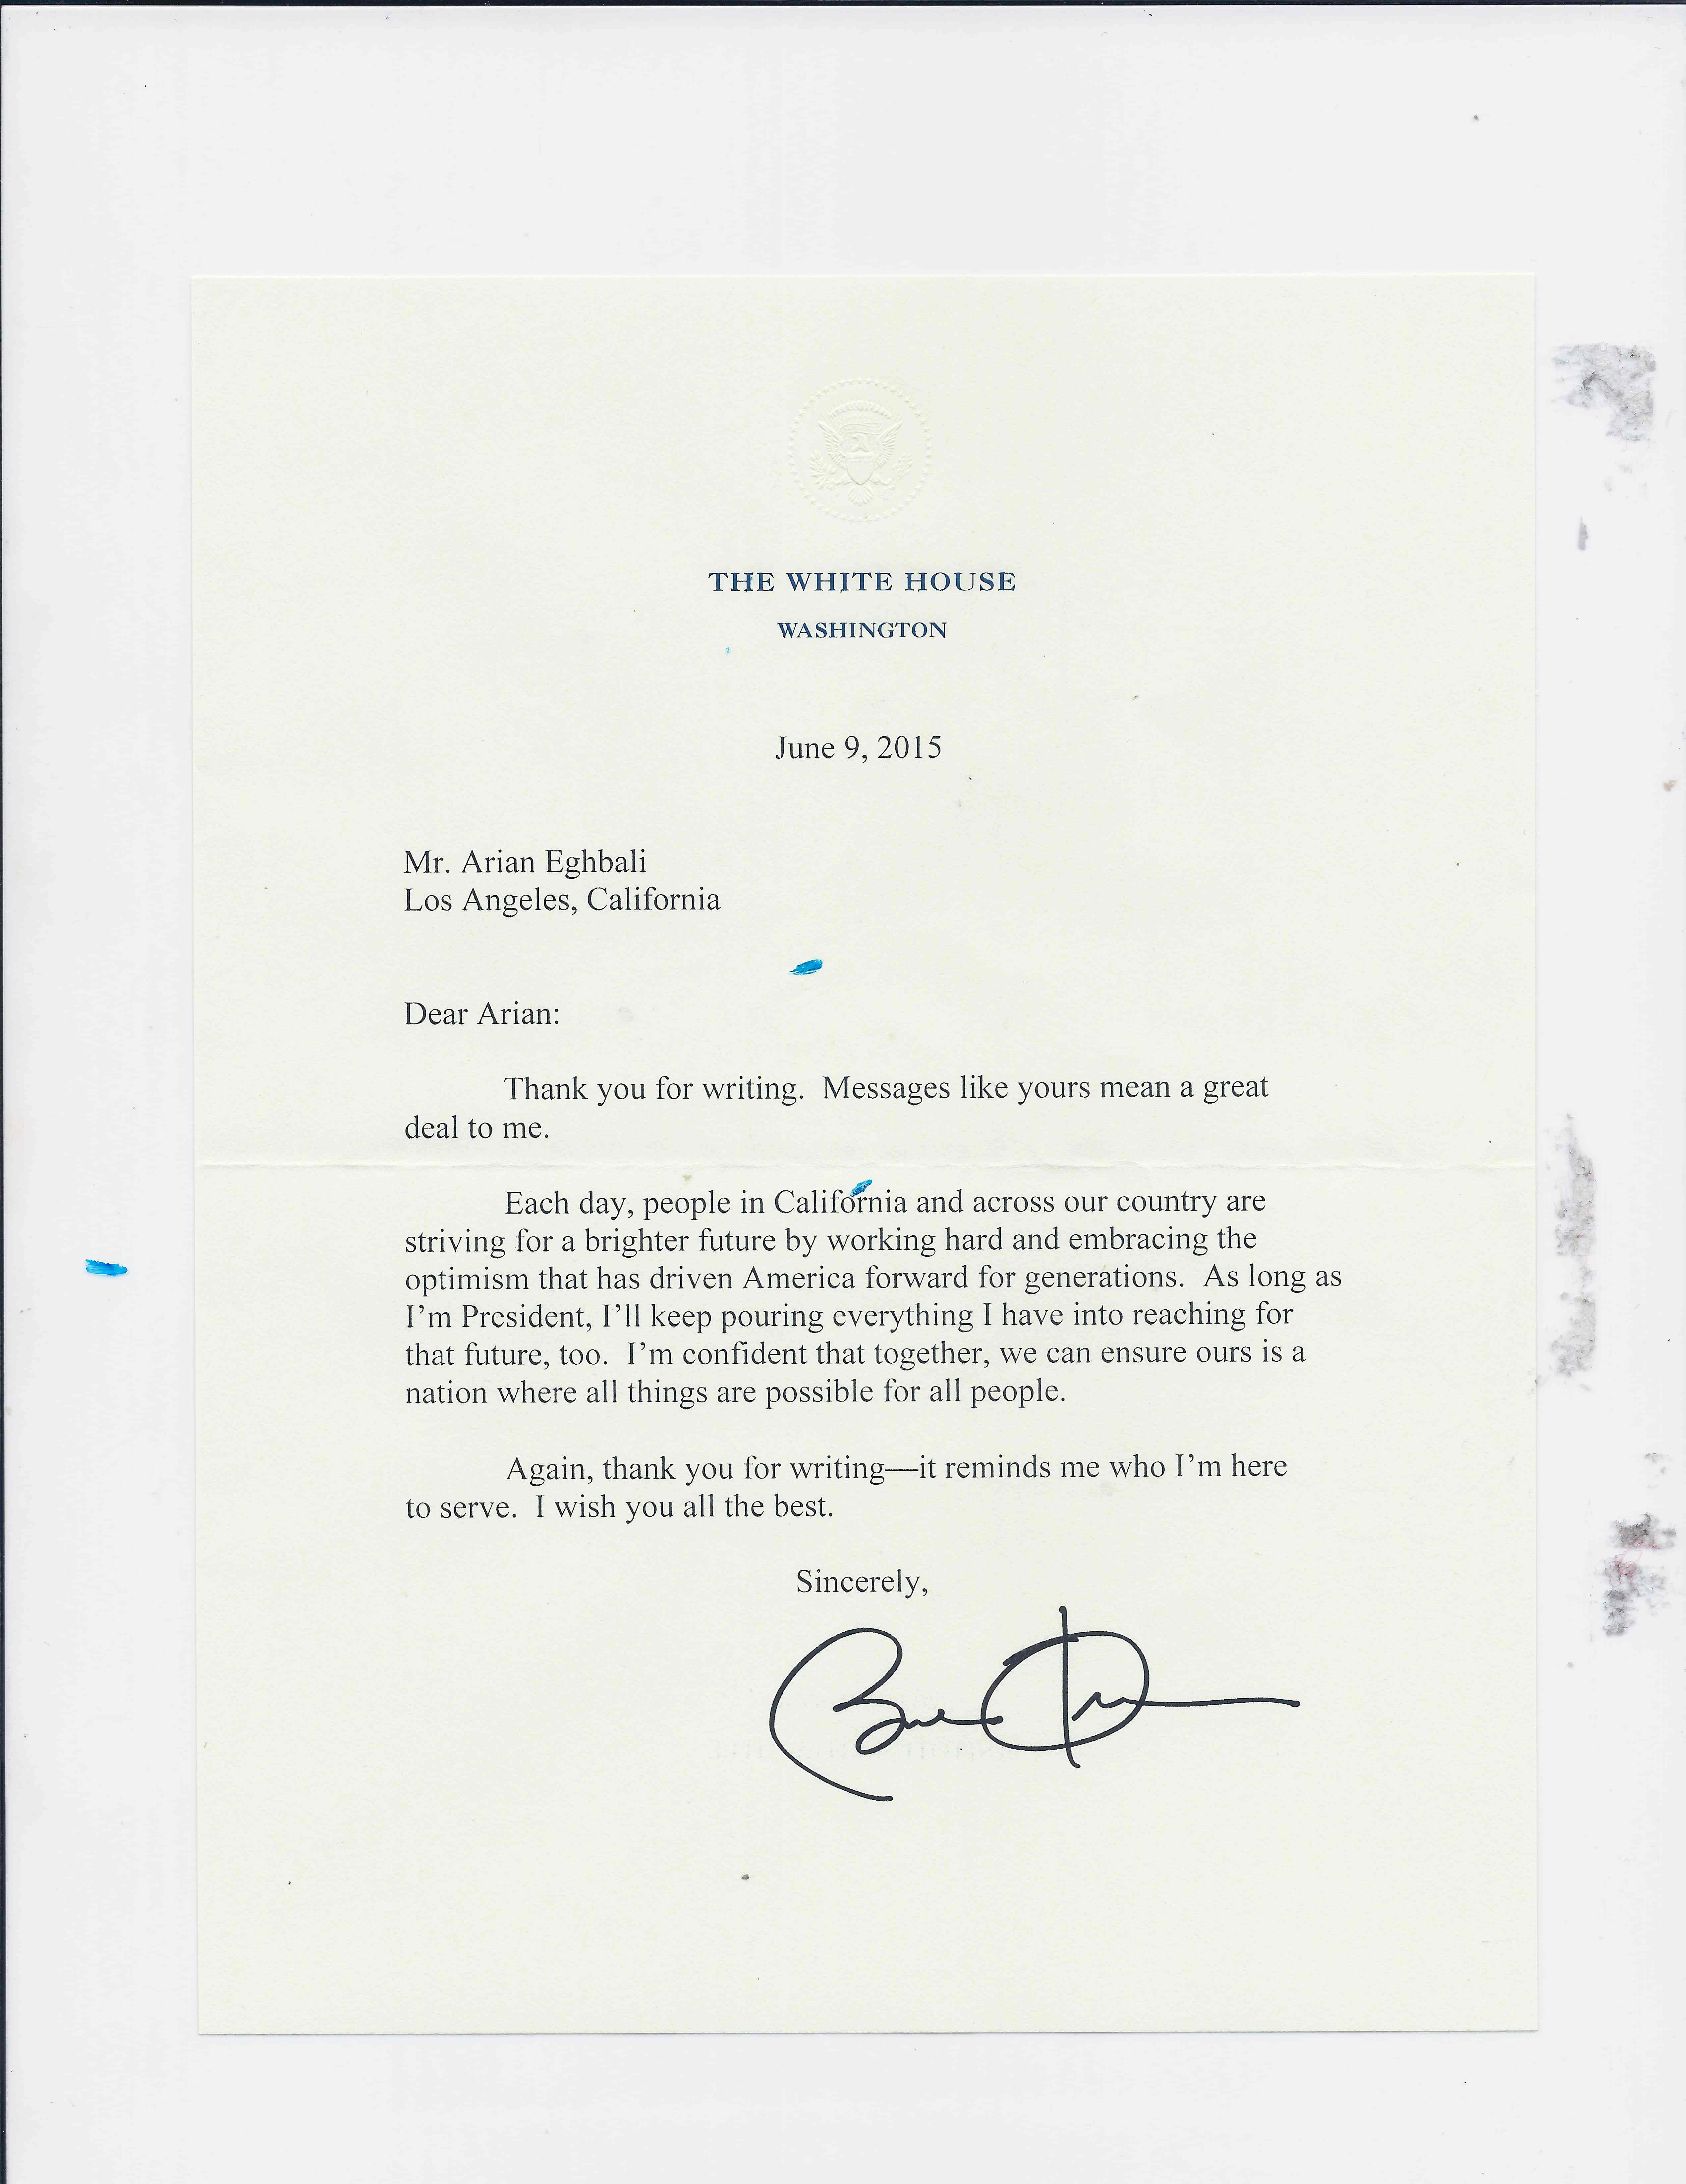 President Obama's letter to Mr. Arian Eghbali